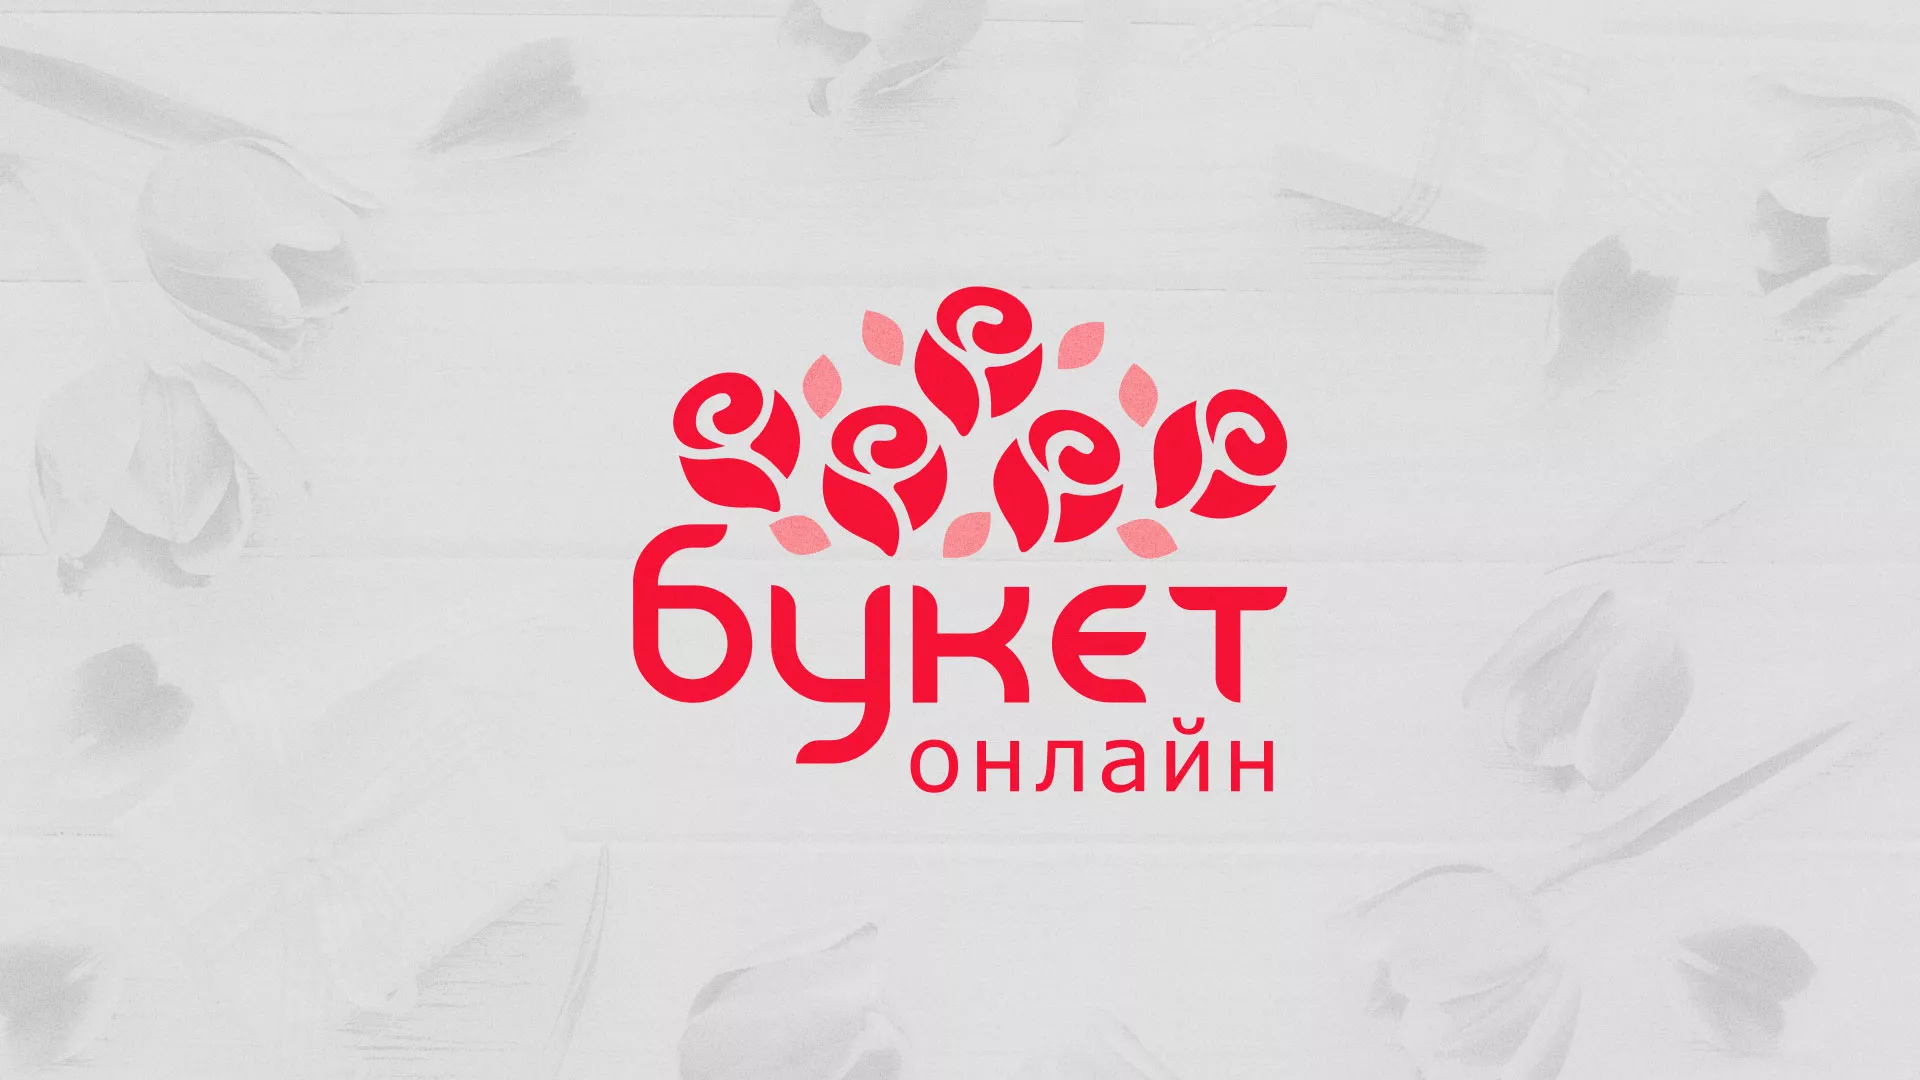 Создание интернет-магазина «Букет-онлайн» по цветам в Зеленогорске